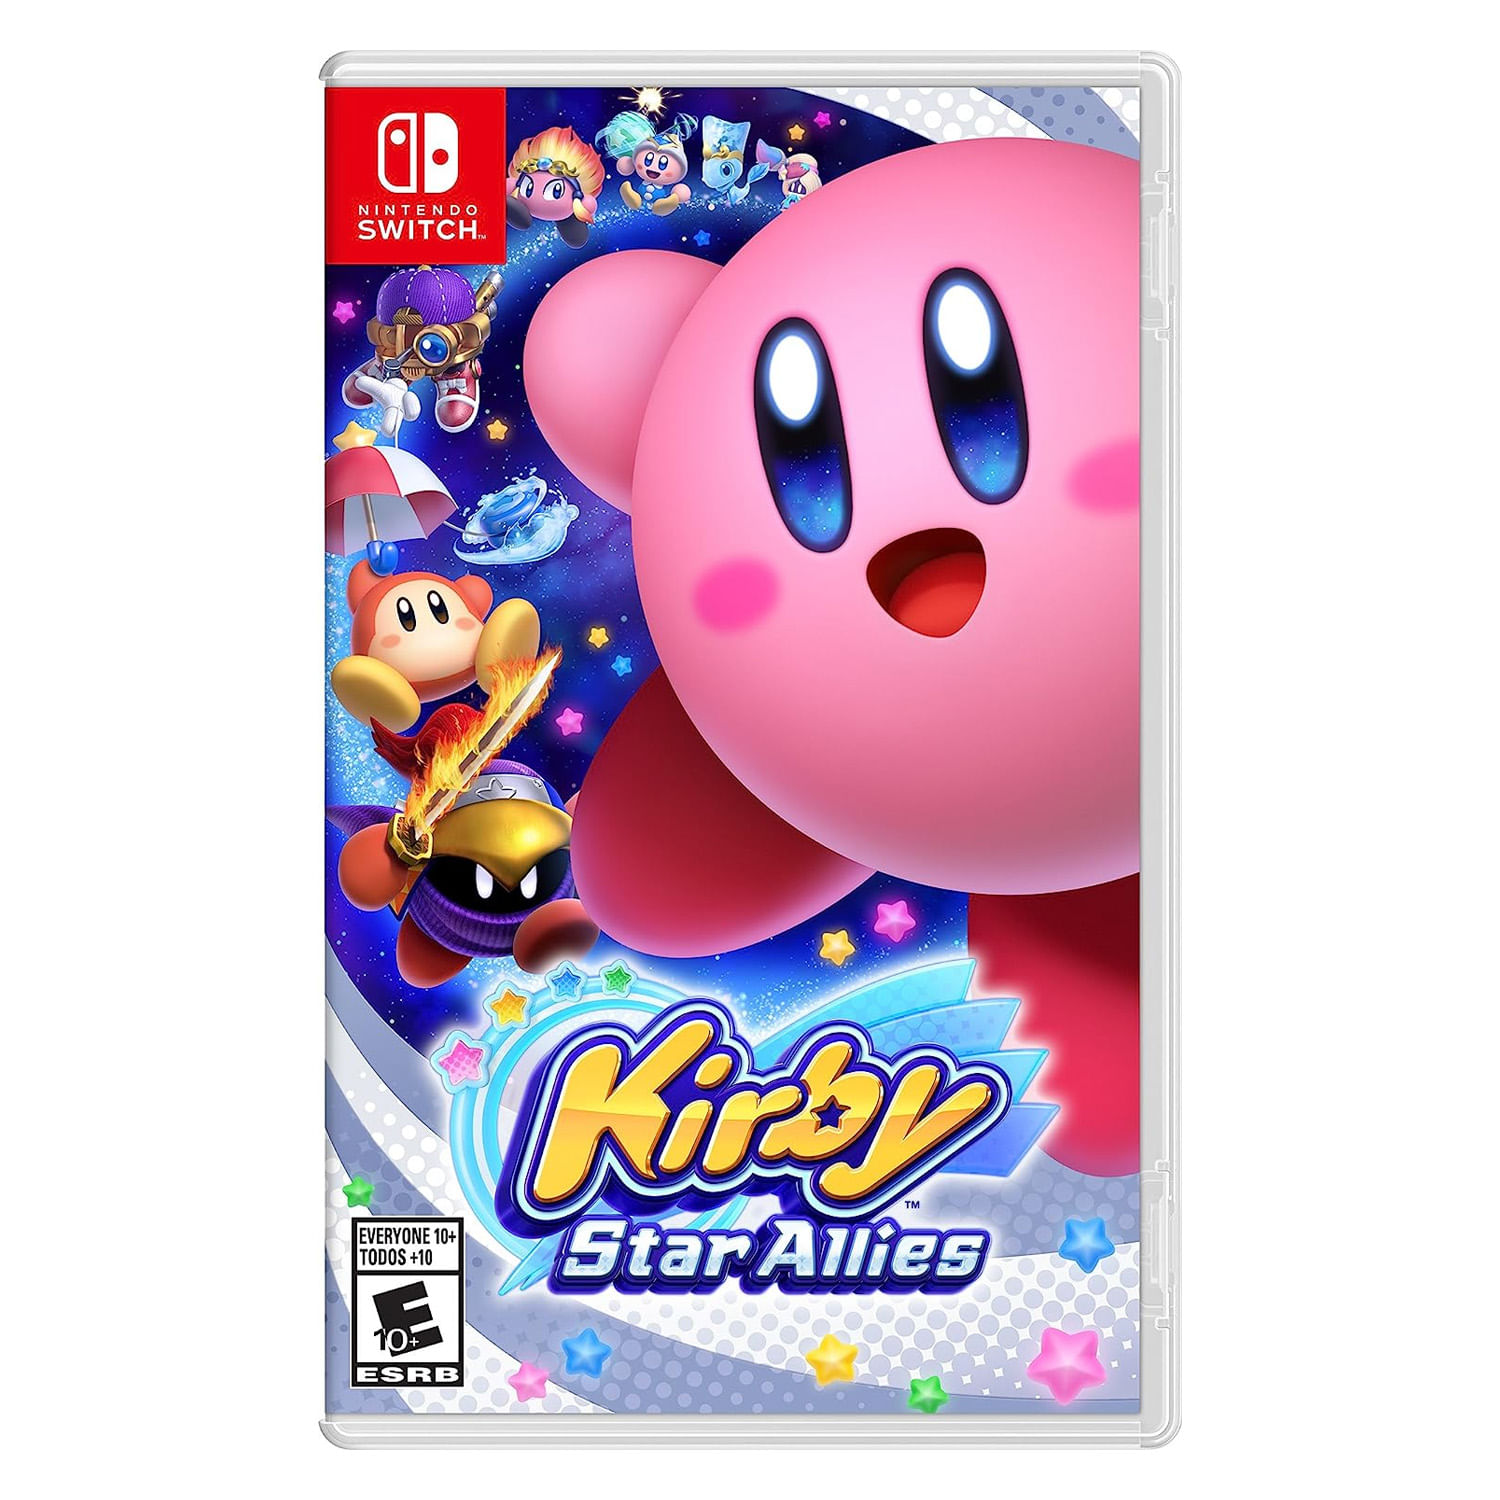 Kirby star allies Nintendo Switch